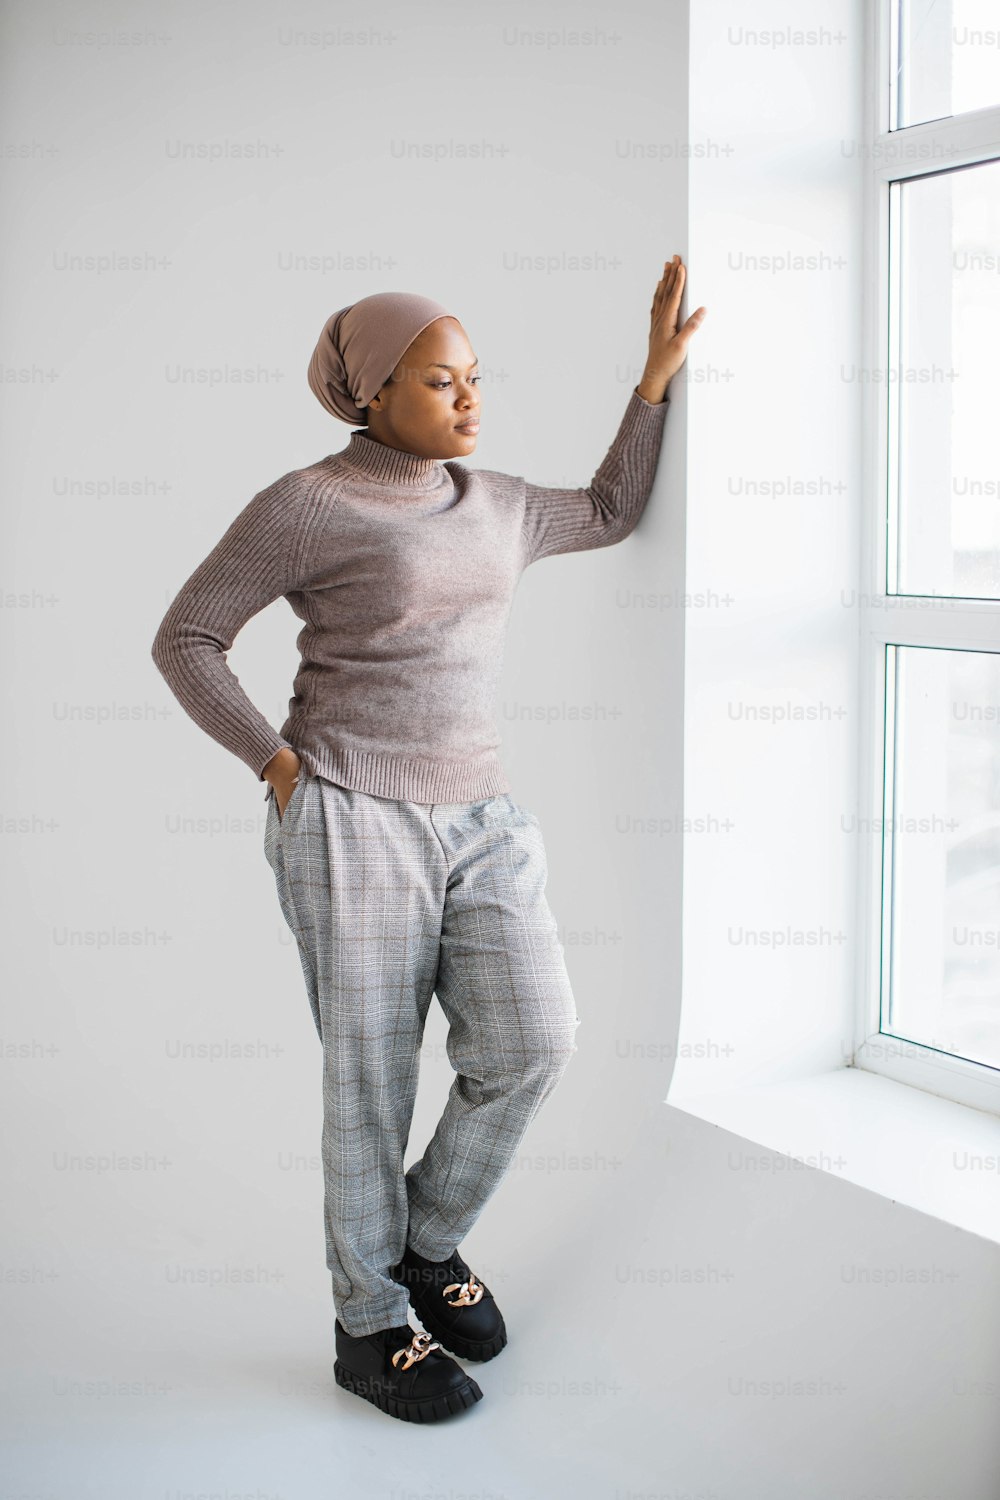 Atractiva mujer musulmana afroamericana con pañuelo en la cabeza y ropa casual de pie en el estudio con fondo blanco y mirando a la ventana. Concepto de personas y estilos de vida.